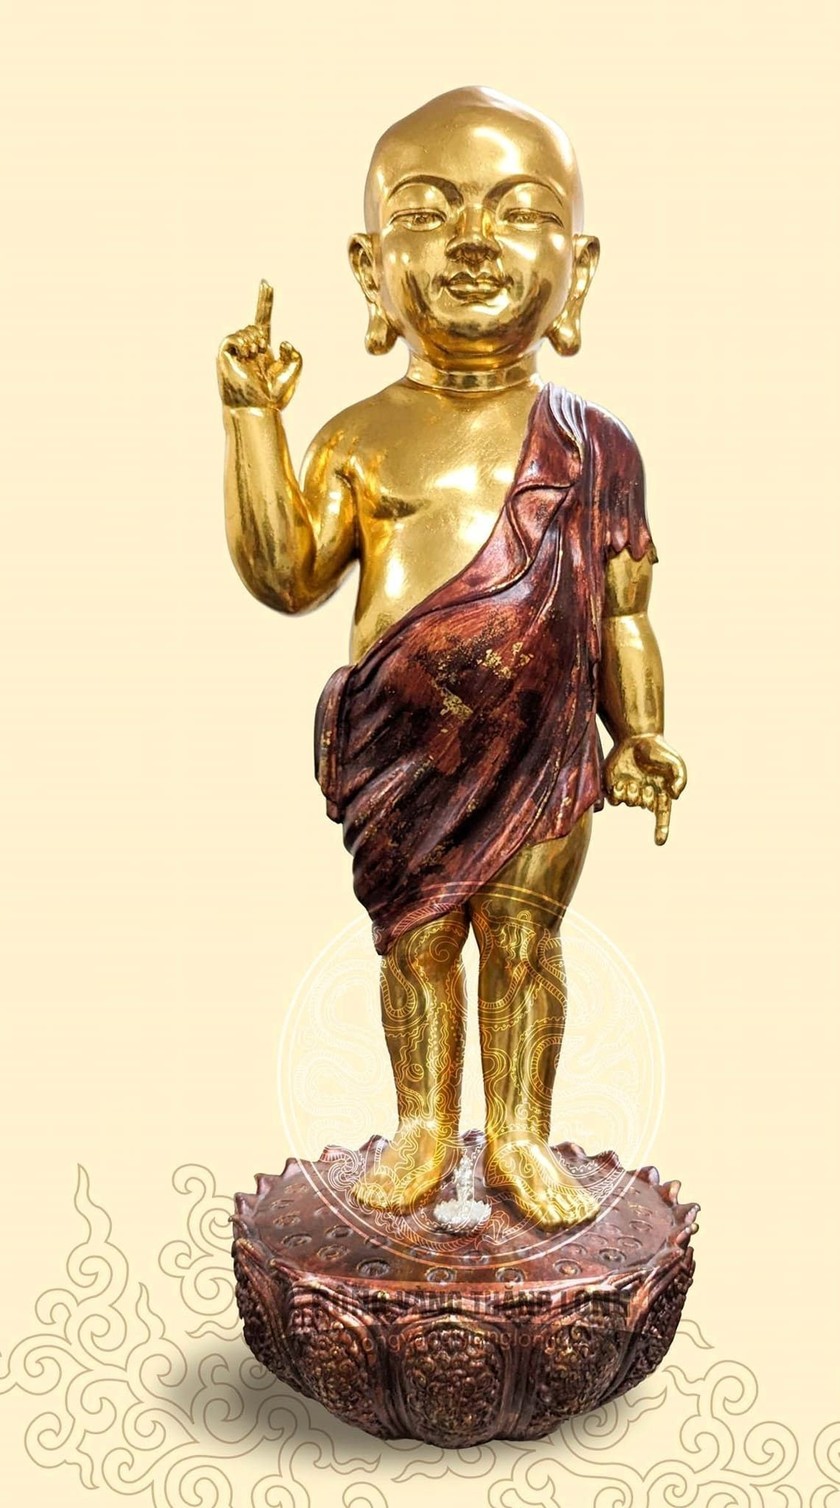 Mẫu tượng Thích Ca sơ sinh mang phong cách hoàng gia thời Lý của nhóm Sen Heritage . (Ảnh Hội quán Di sản)